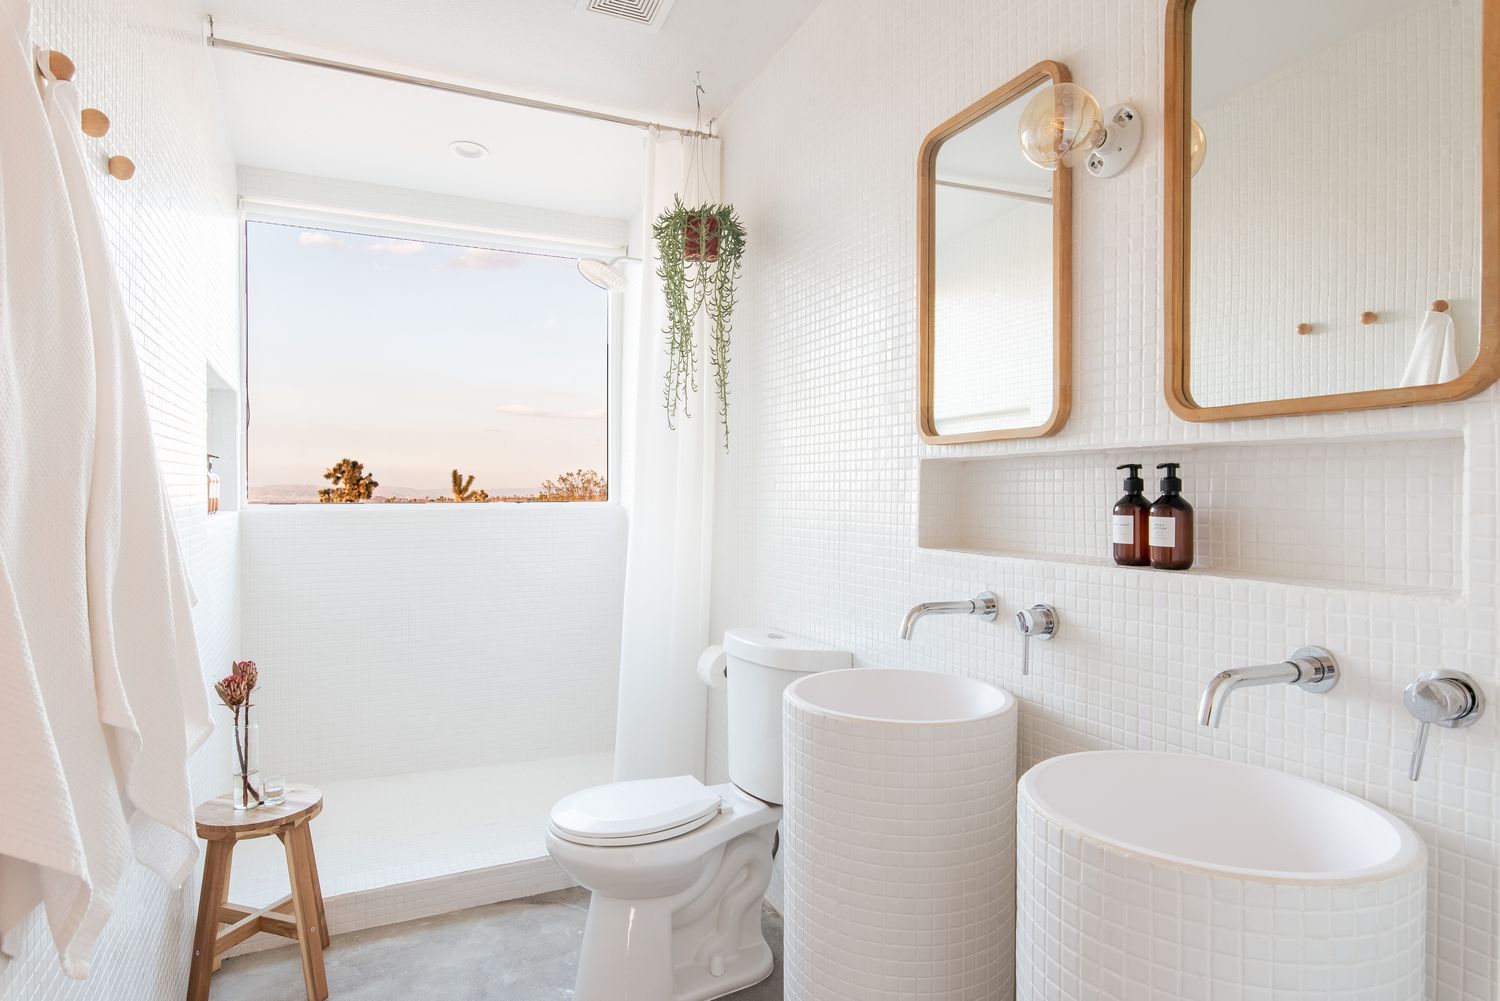 Banheiro pequeno remodelado todo branco com planta suspensa, azulejo de mosaico branco e janela do chuveiro